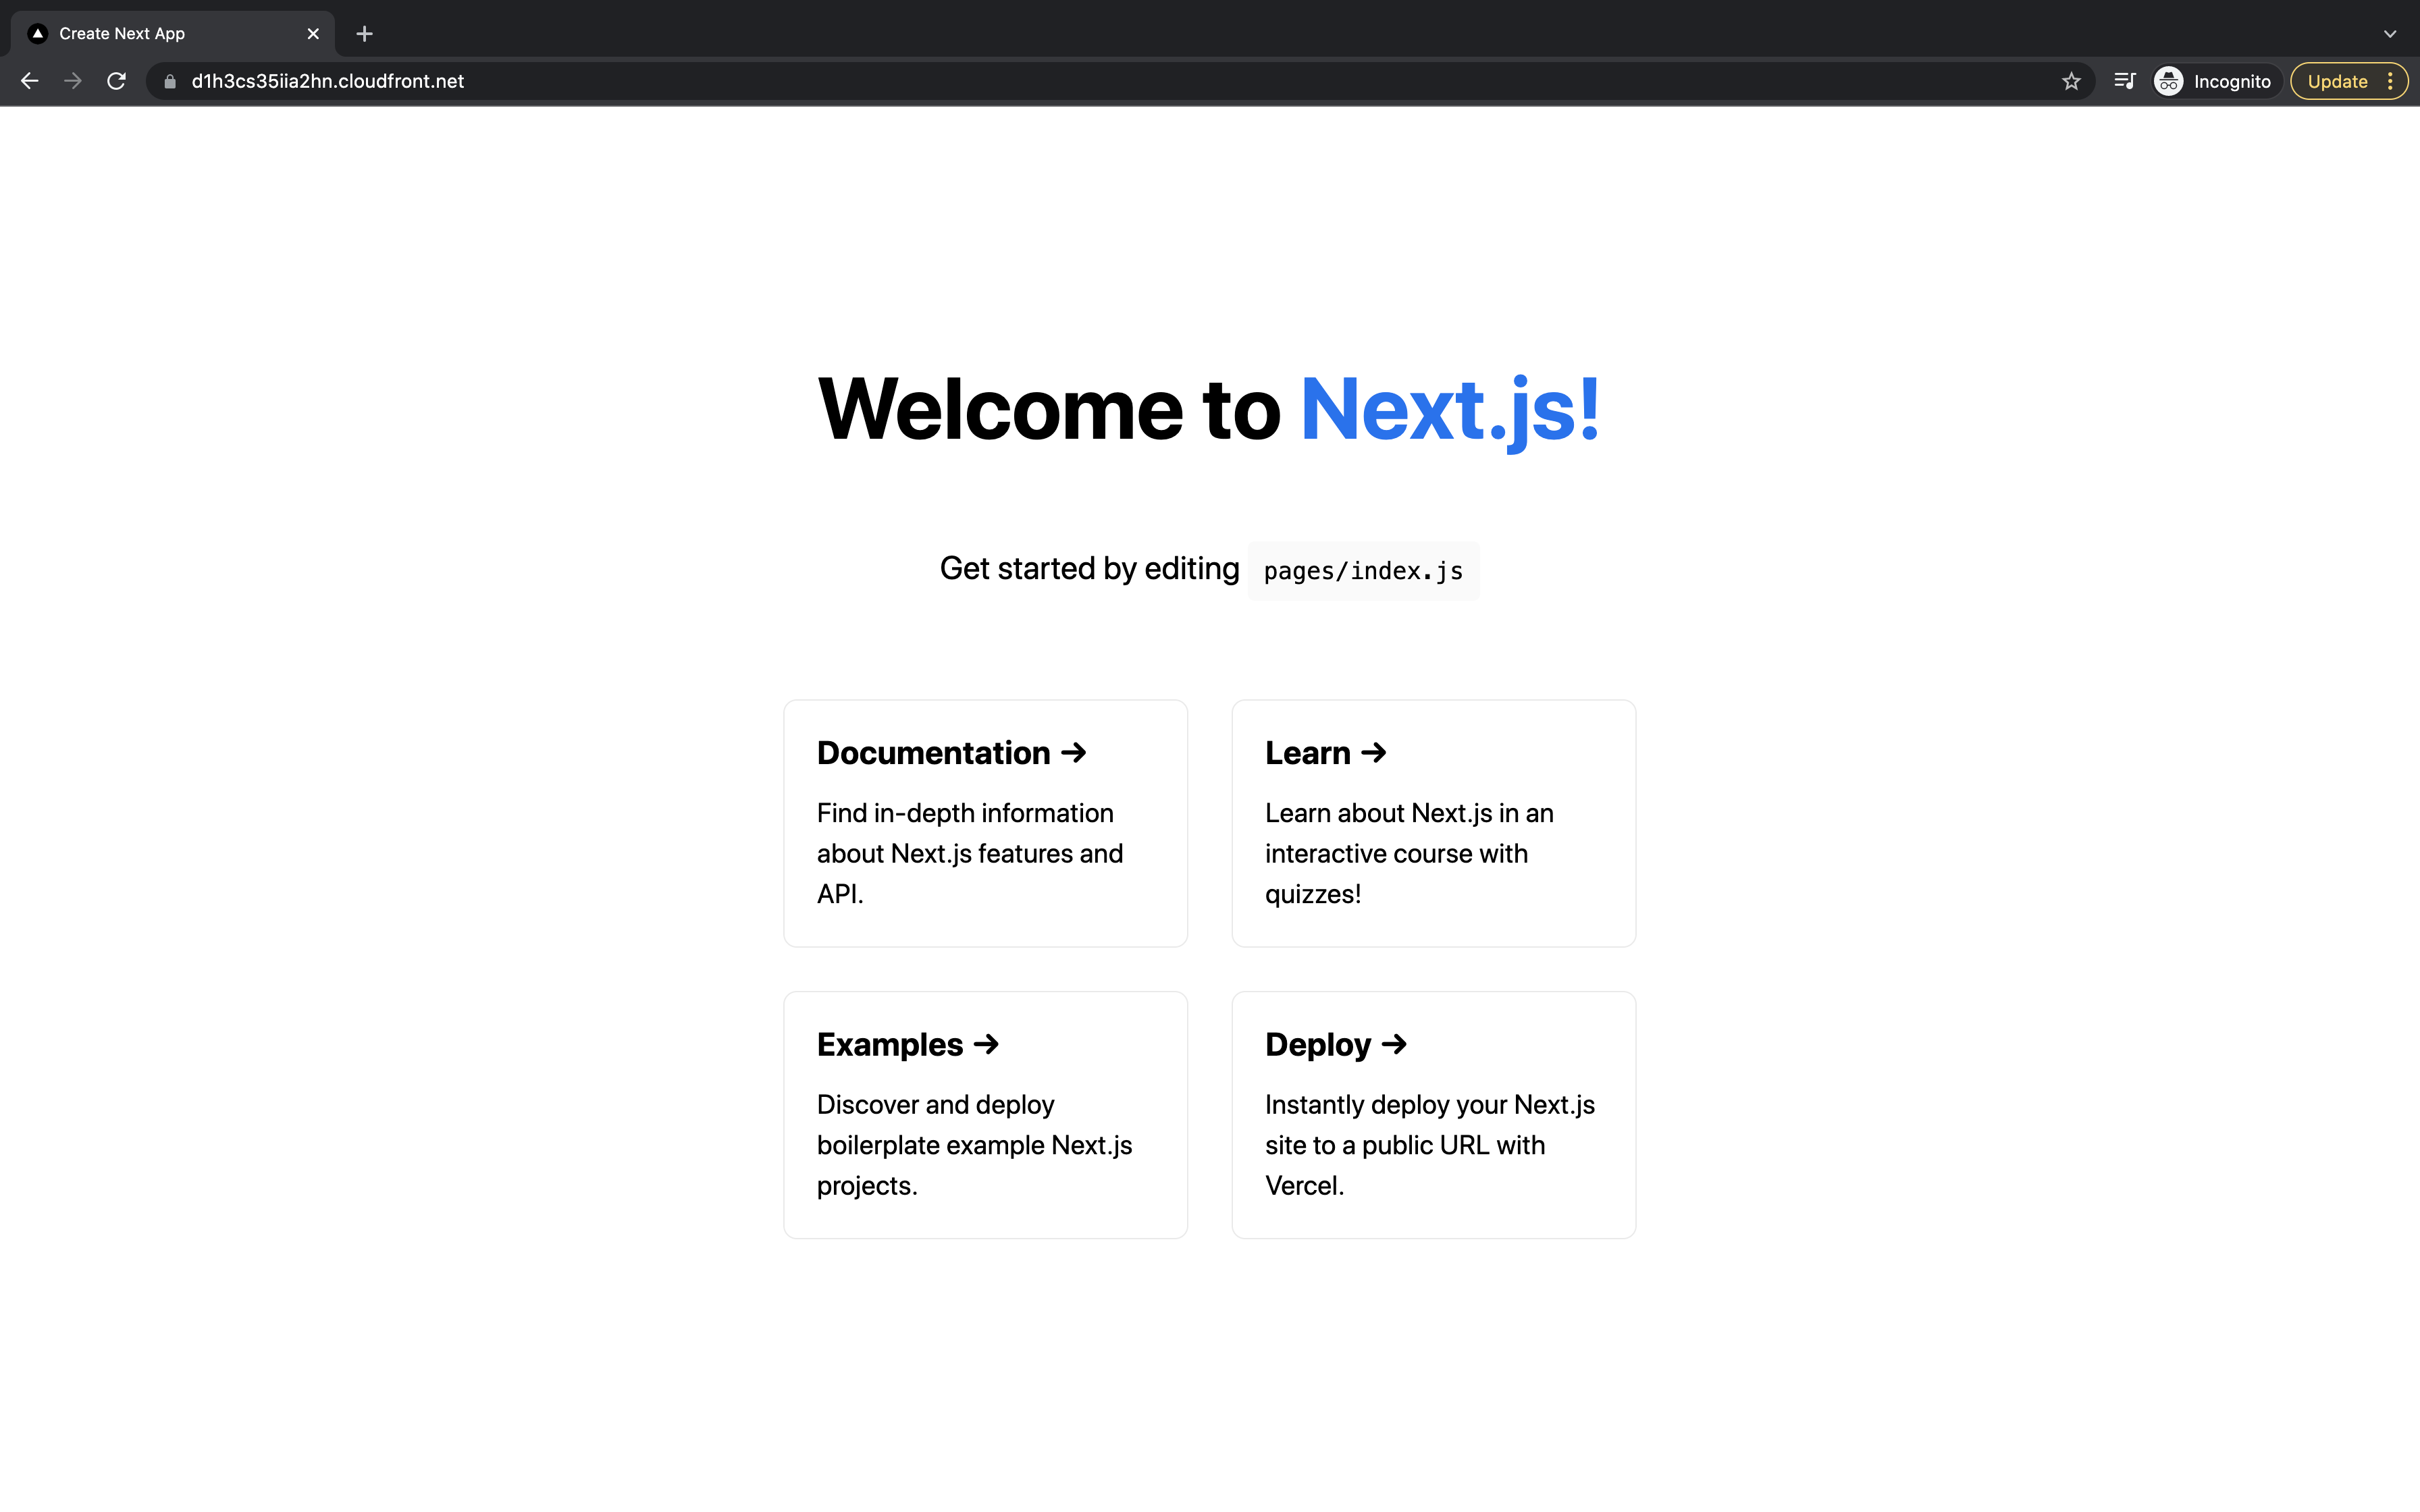 Next.js Application deployed in AWS Lambda